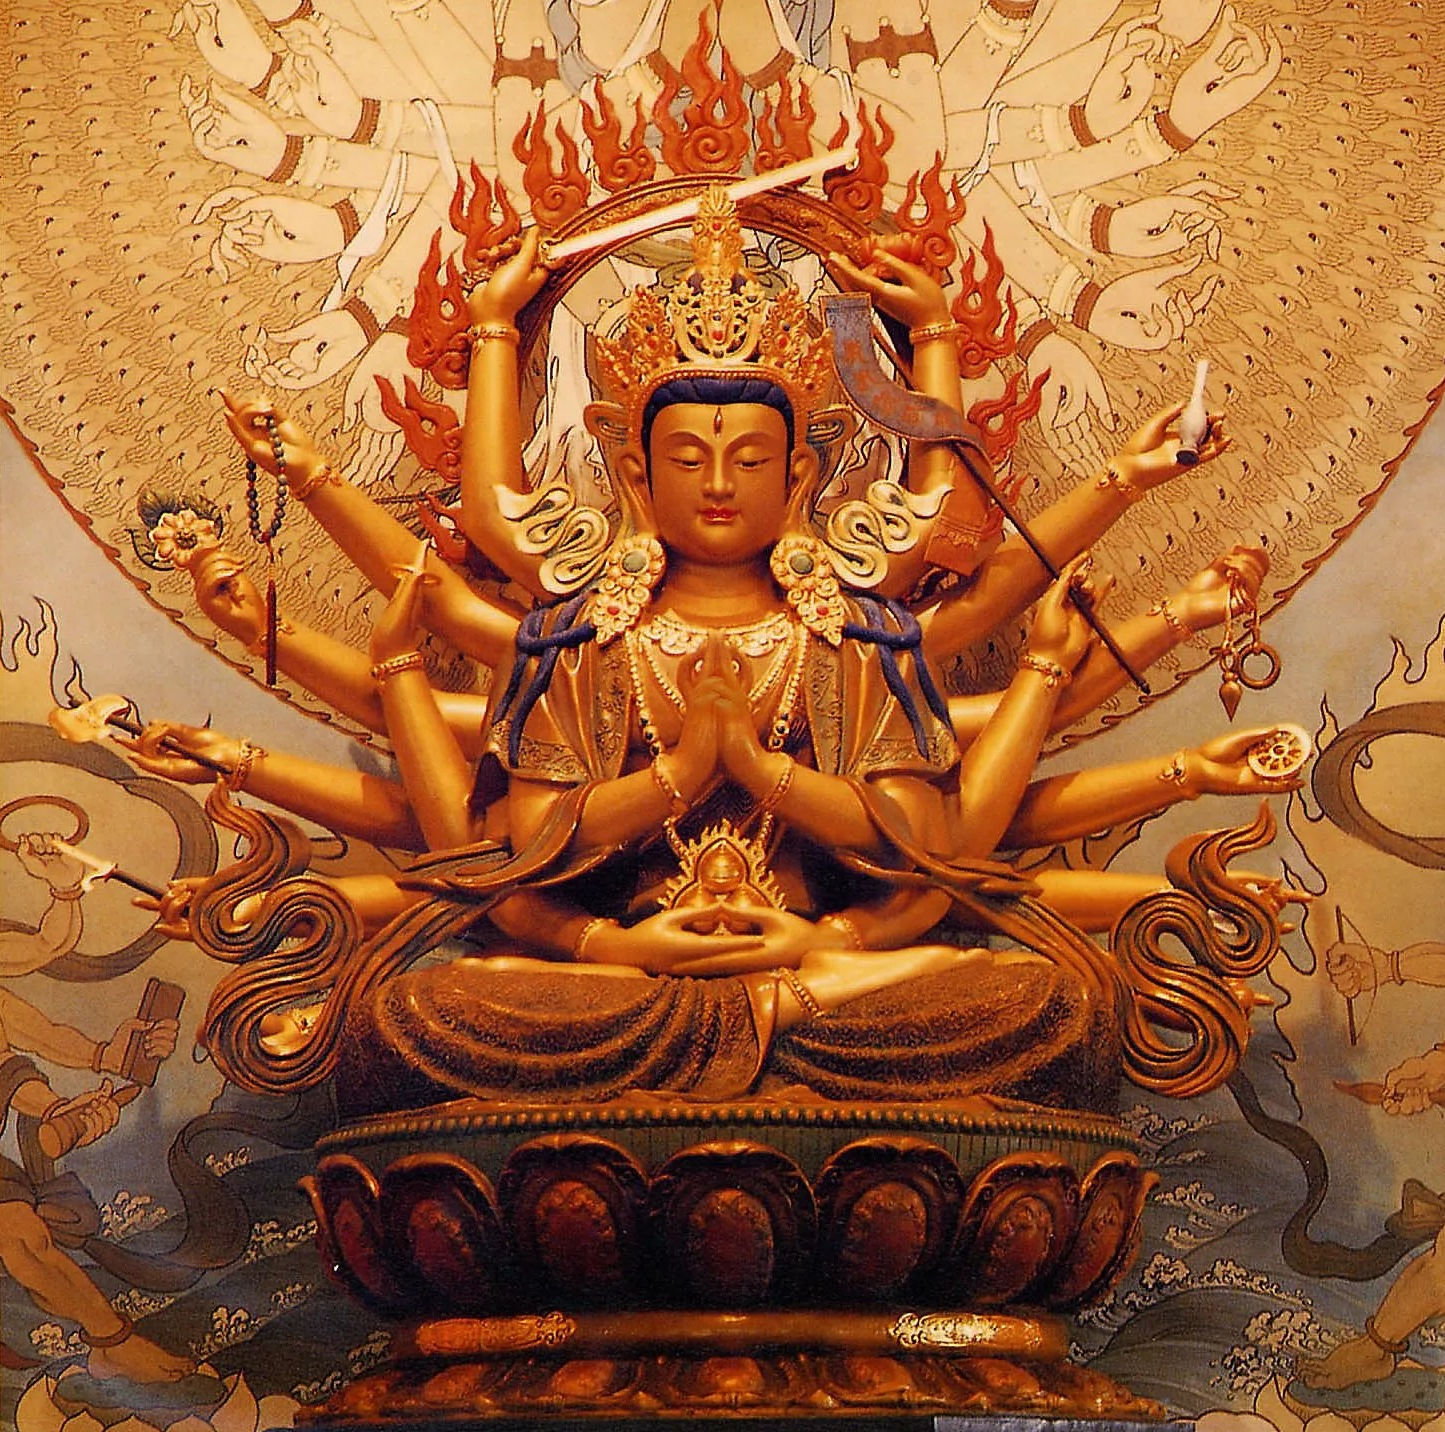 Chú Phật Mẫu Chuẩn Đề, thần chú chuẩn đề tiếng Phạn